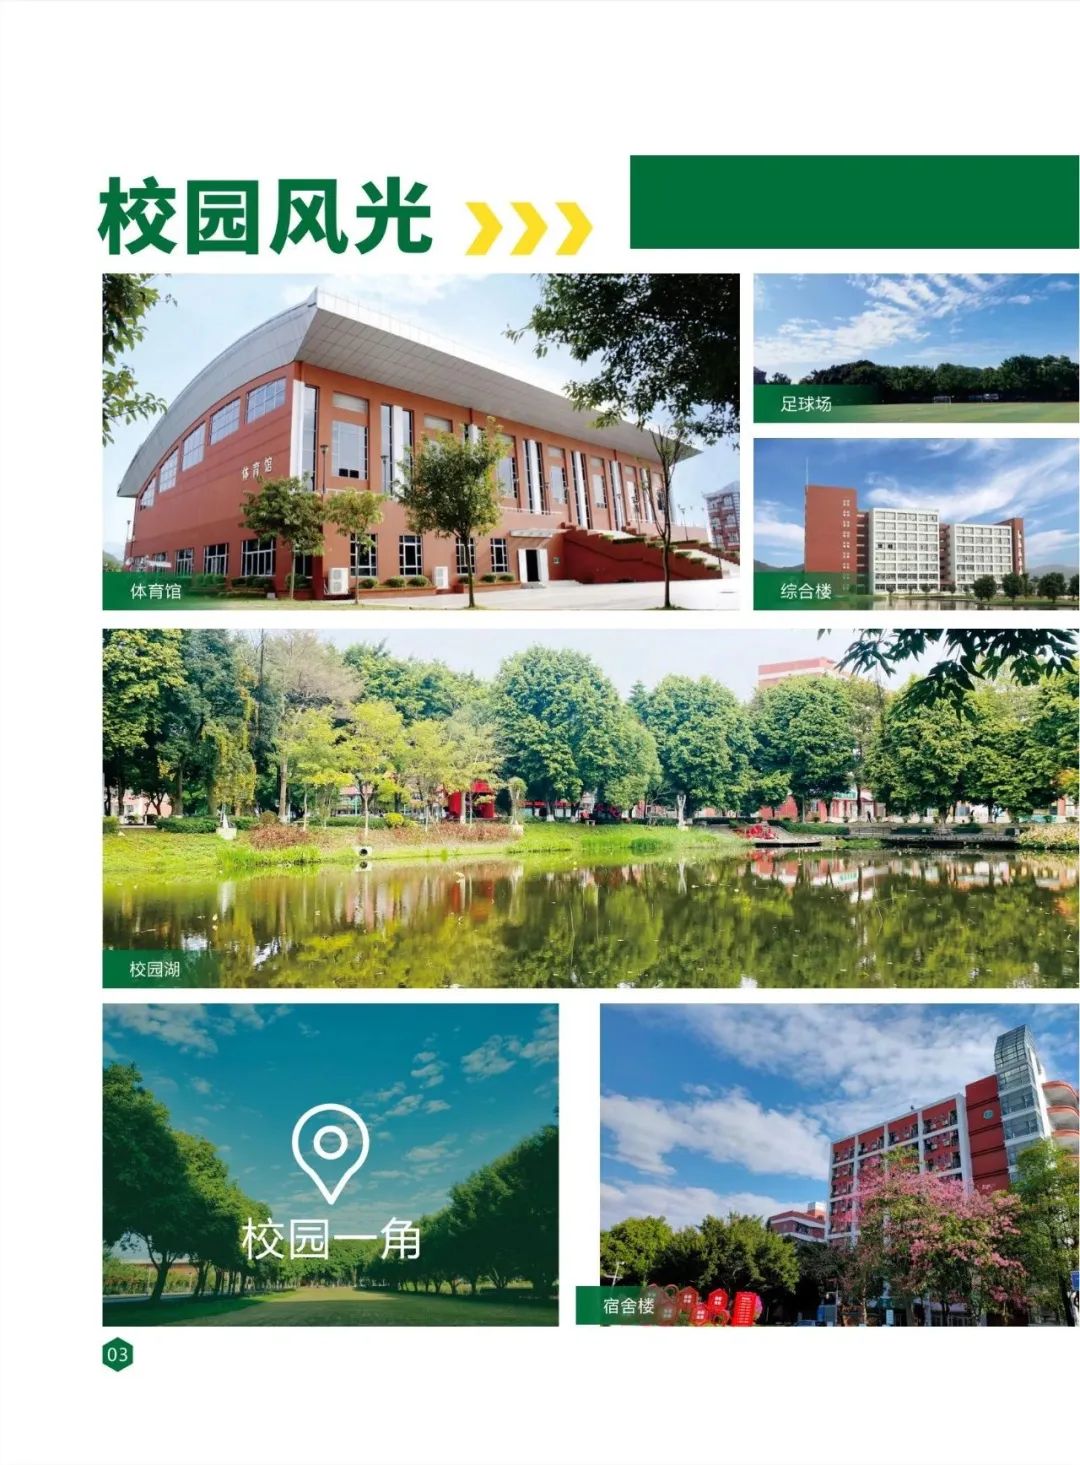 广州工程技术职业学院2023年春季高考招生简章